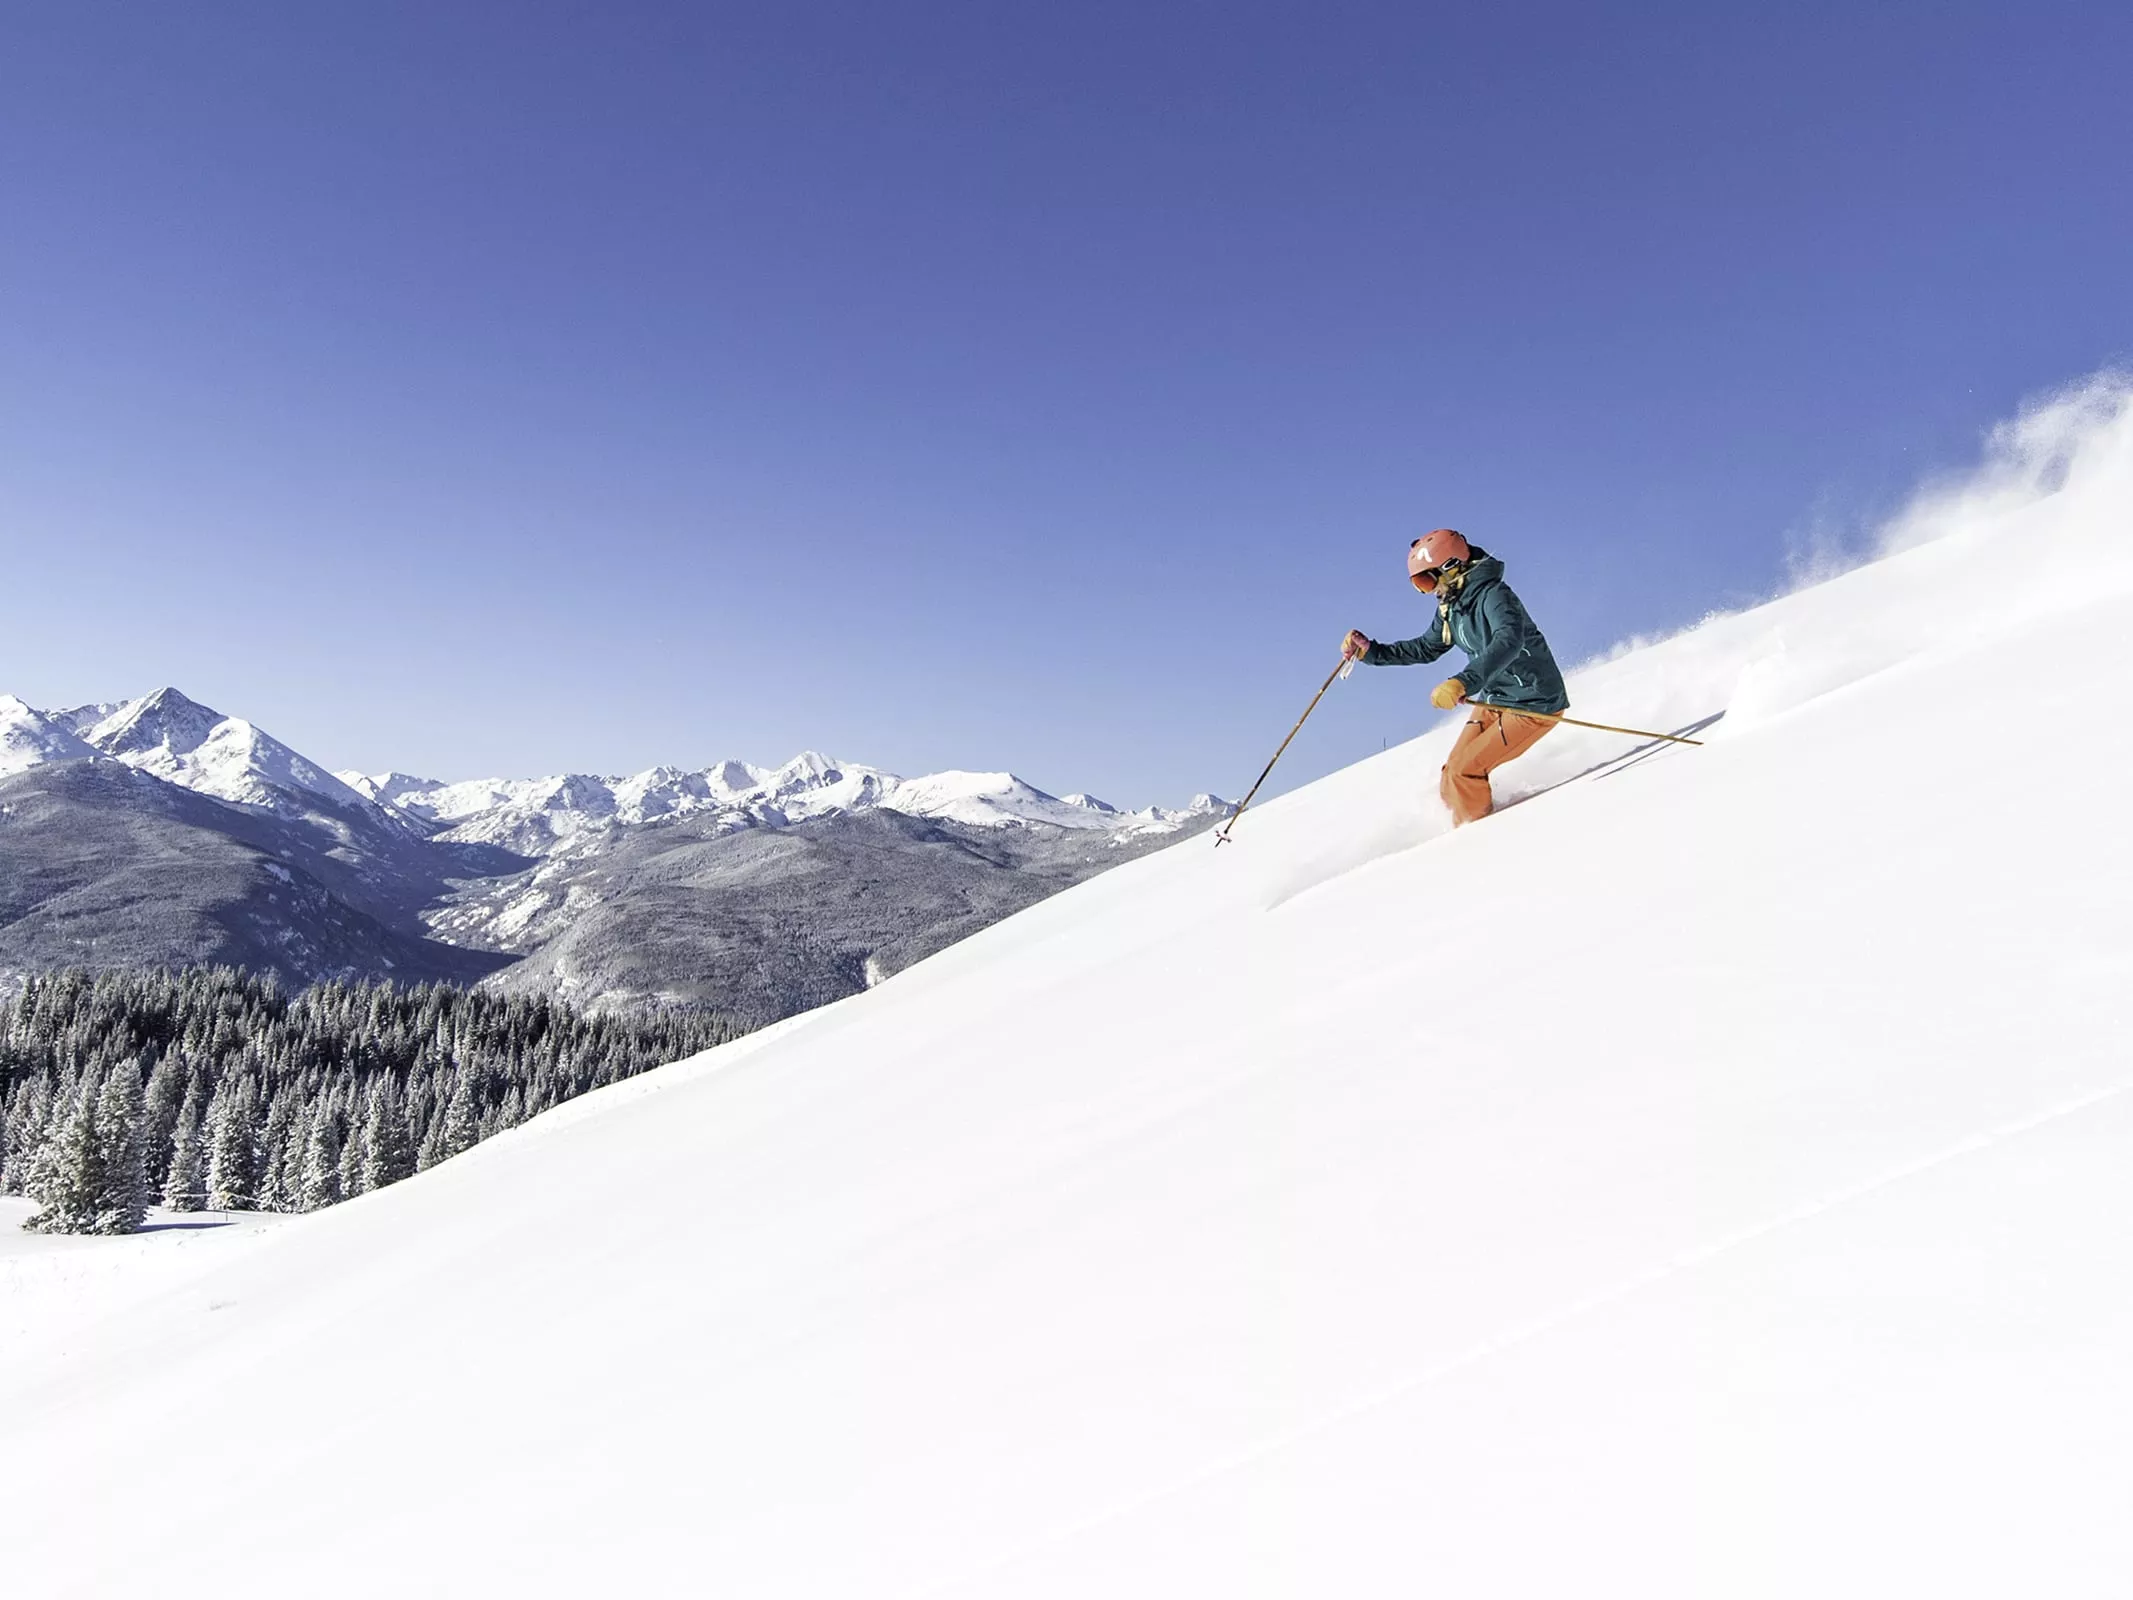 Skicentrum de Wijchense Berg in Netherlands, Europe | Snowboarding,Skiing - Rated 0.8